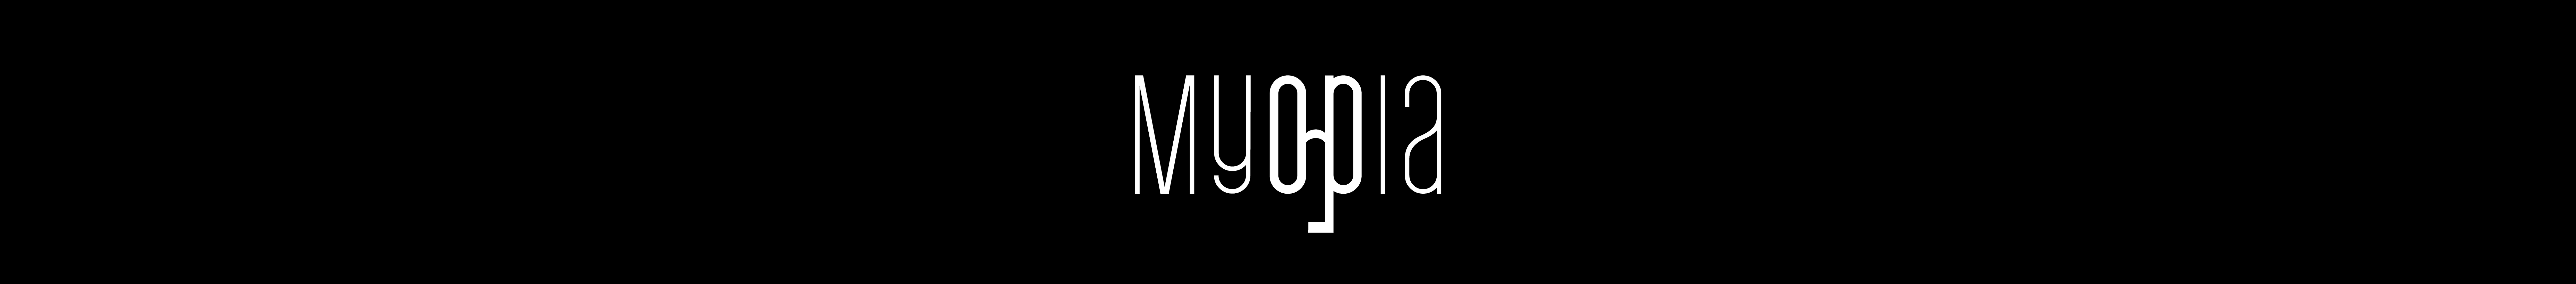 Myopia Colectivo Audiovisual's profile banner